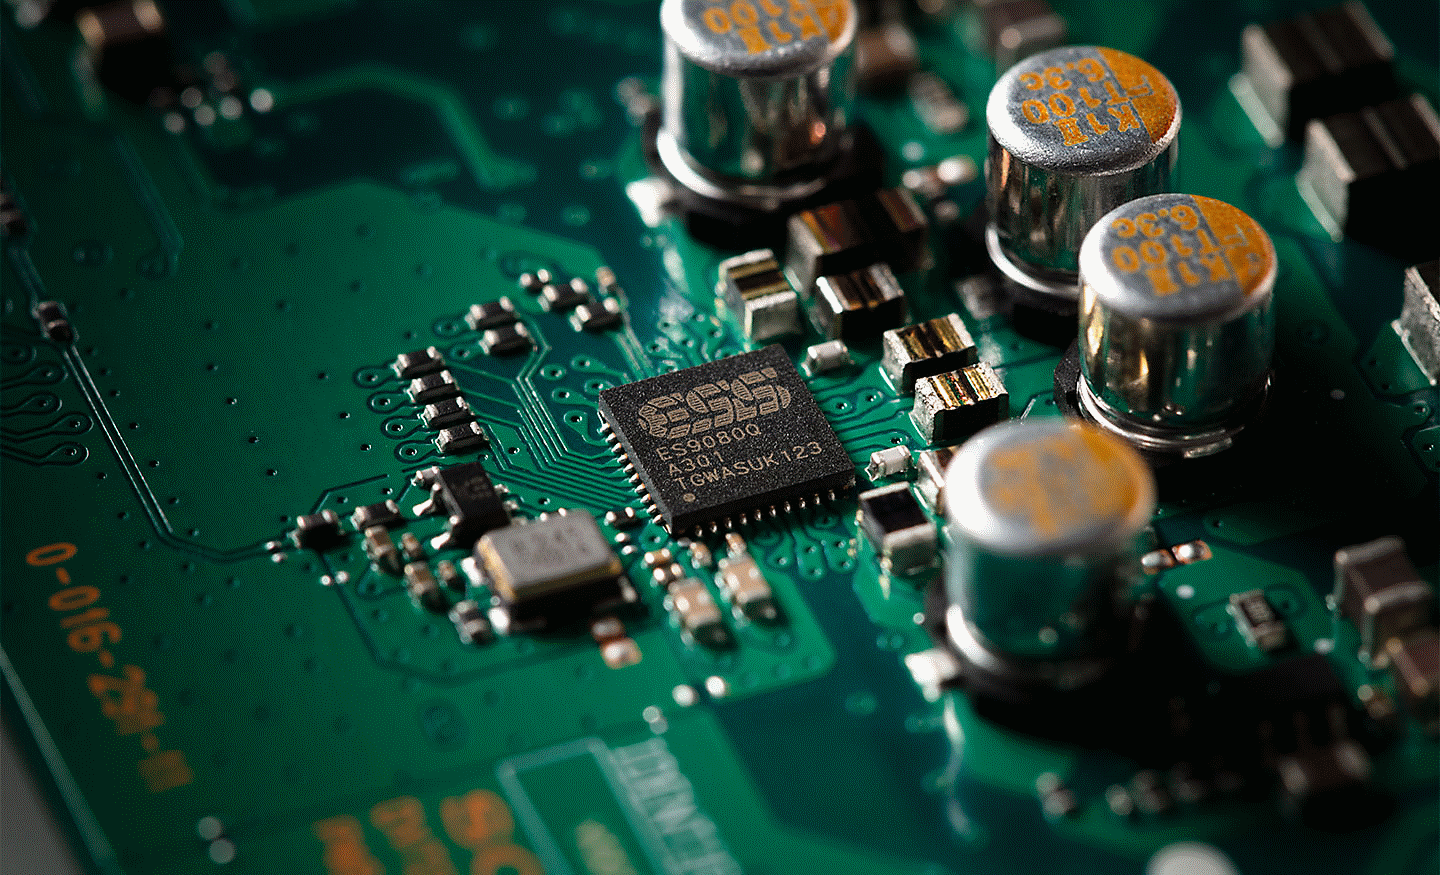 Gambar close-up chip ESS DAC pada motherboard dengan berbagai komponen lainnya.